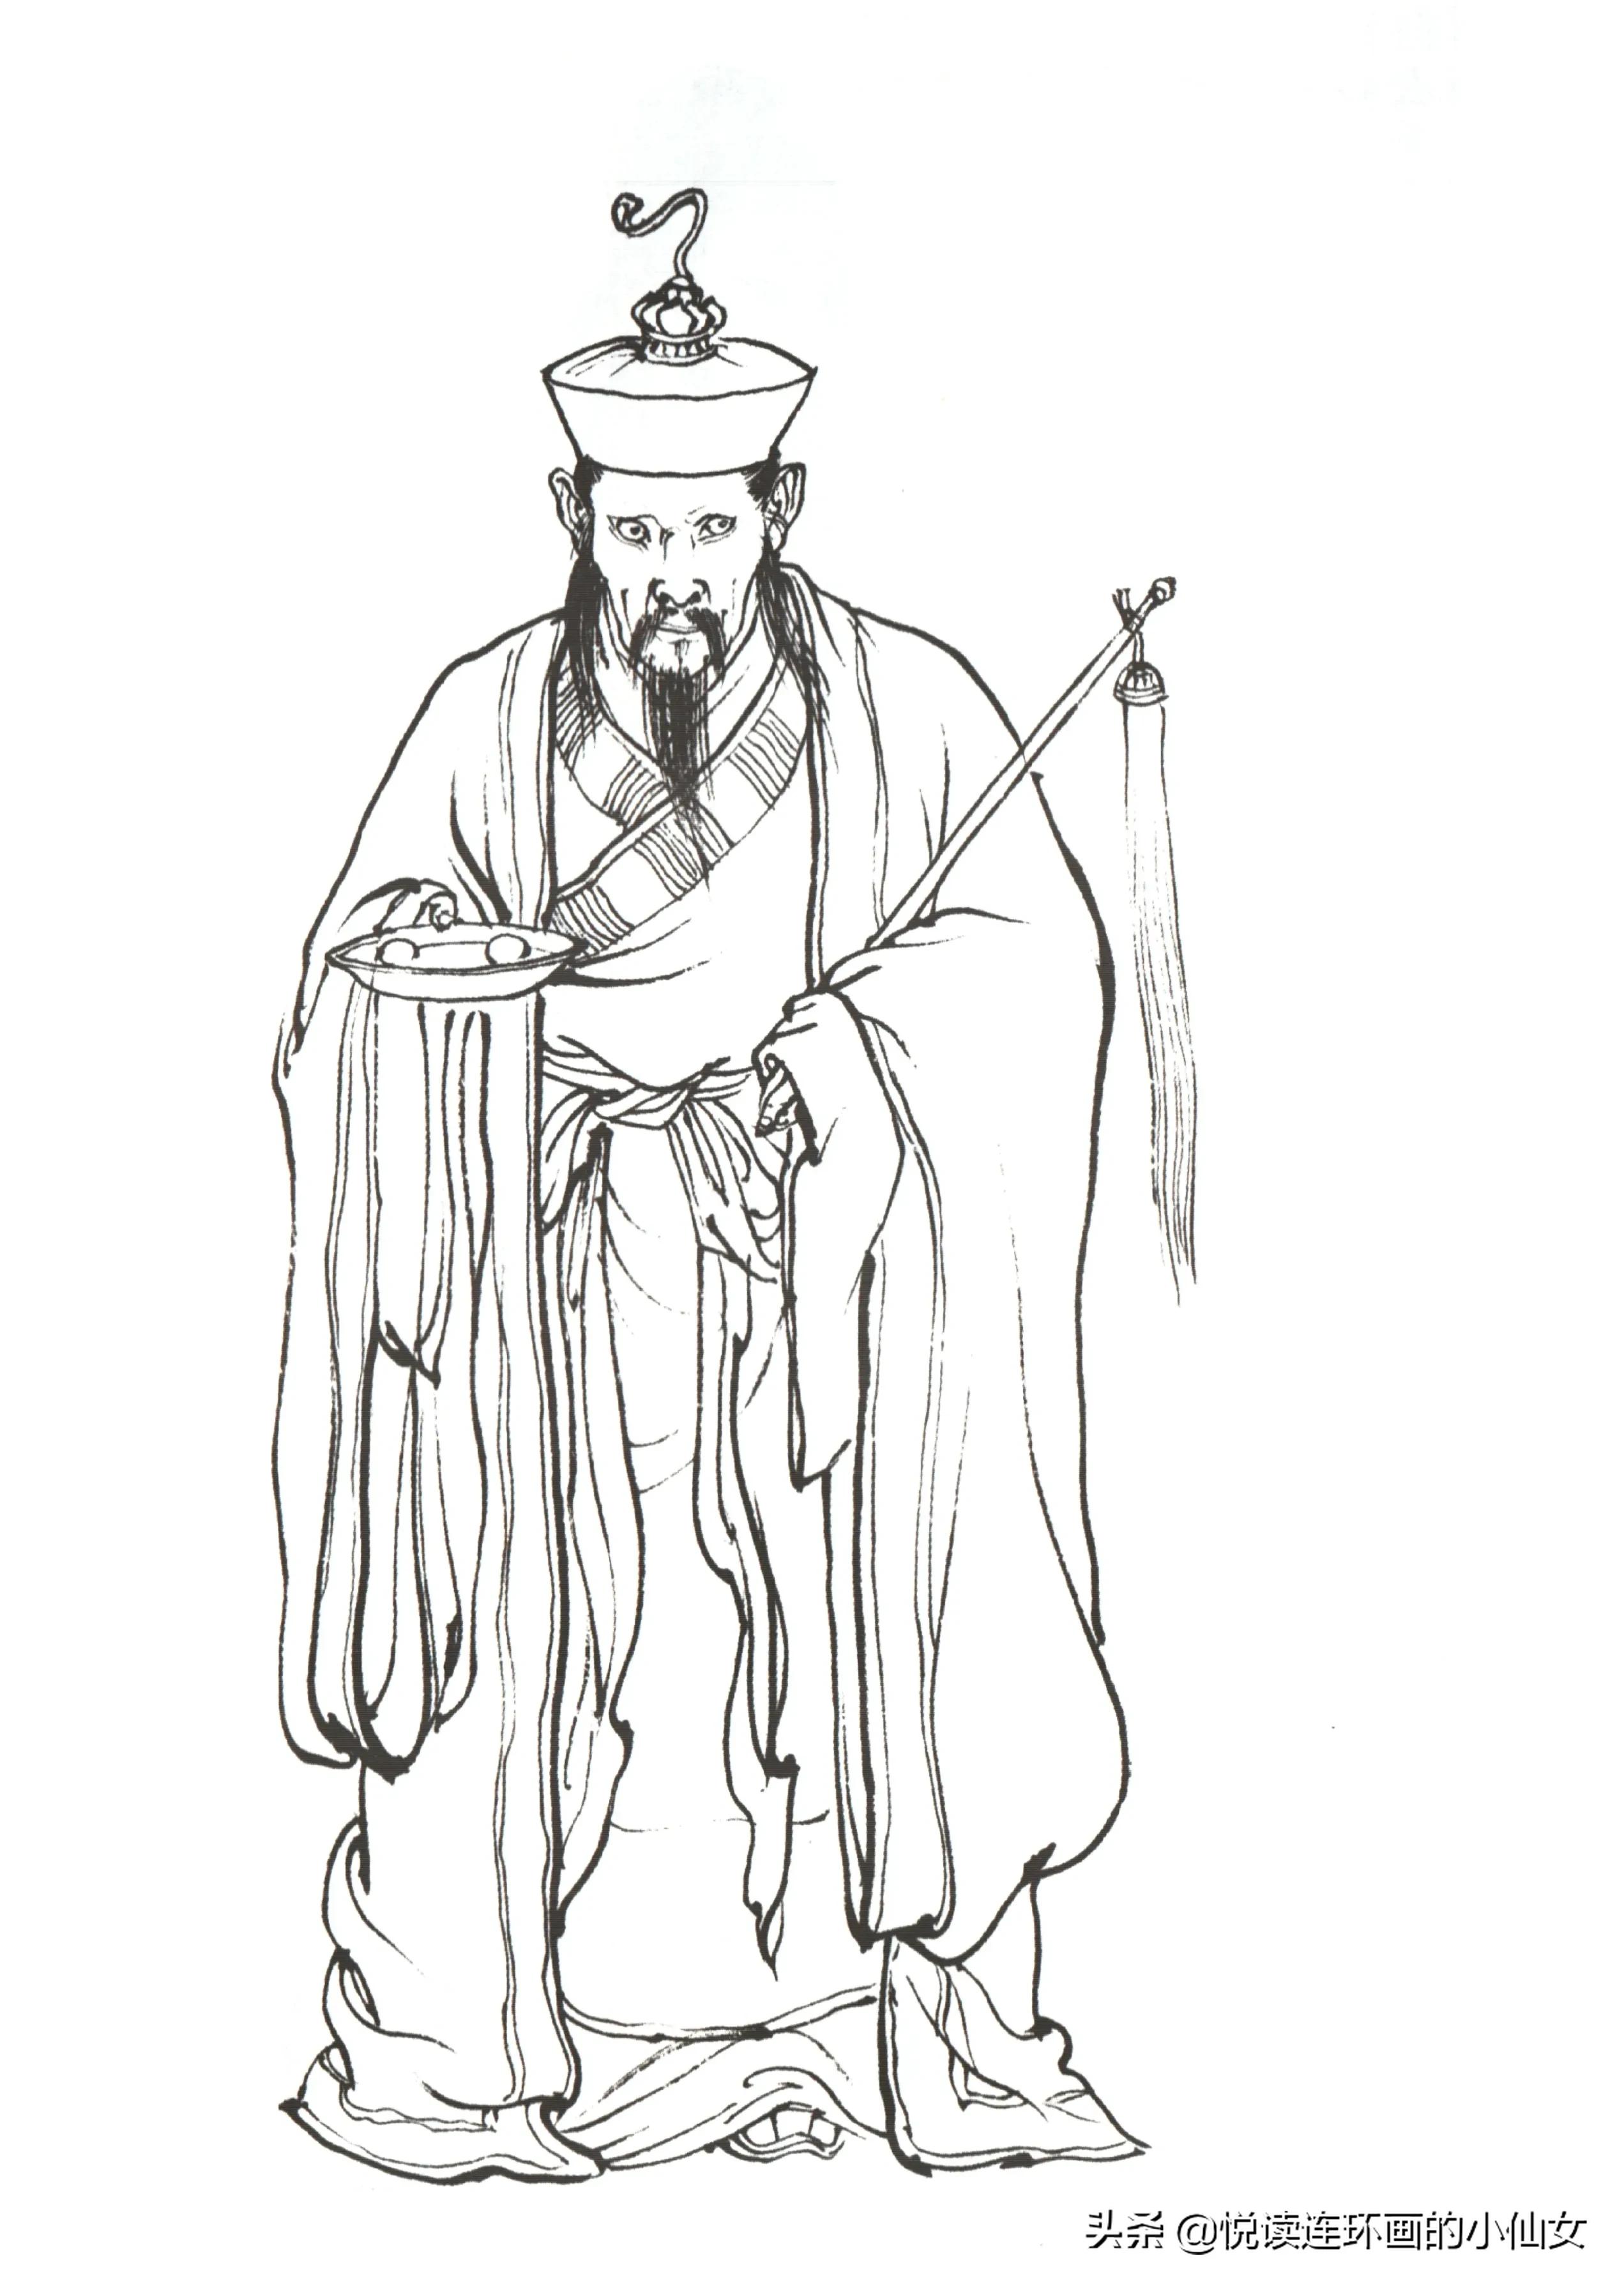 西游记神魔人物画谱，李云中绘插图(130)